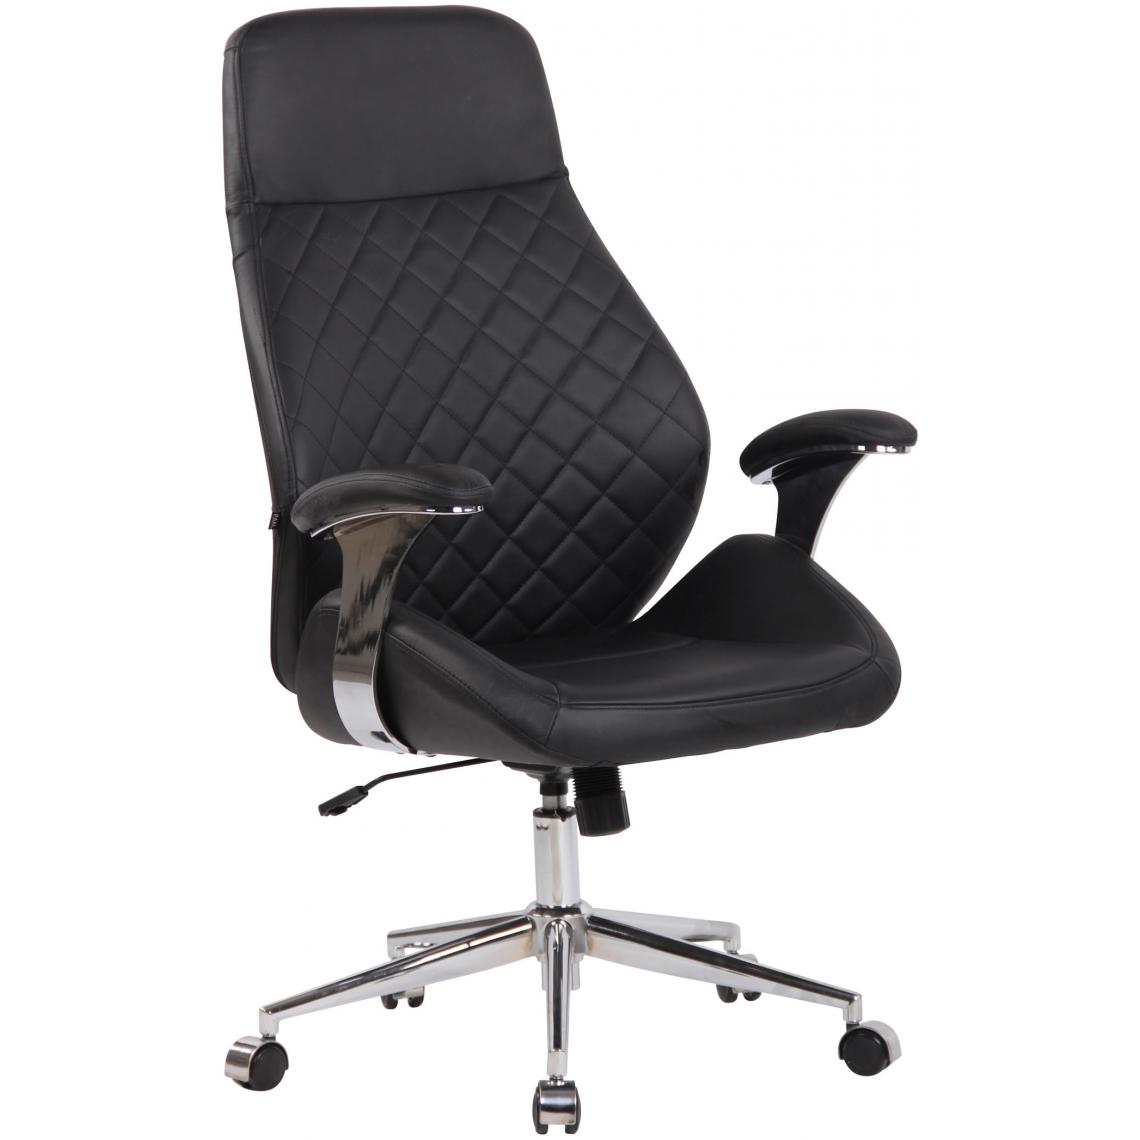 Icaverne - Splendide Chaise de bureau famille Tbilissi cuir véritable couleur noir - Chaises